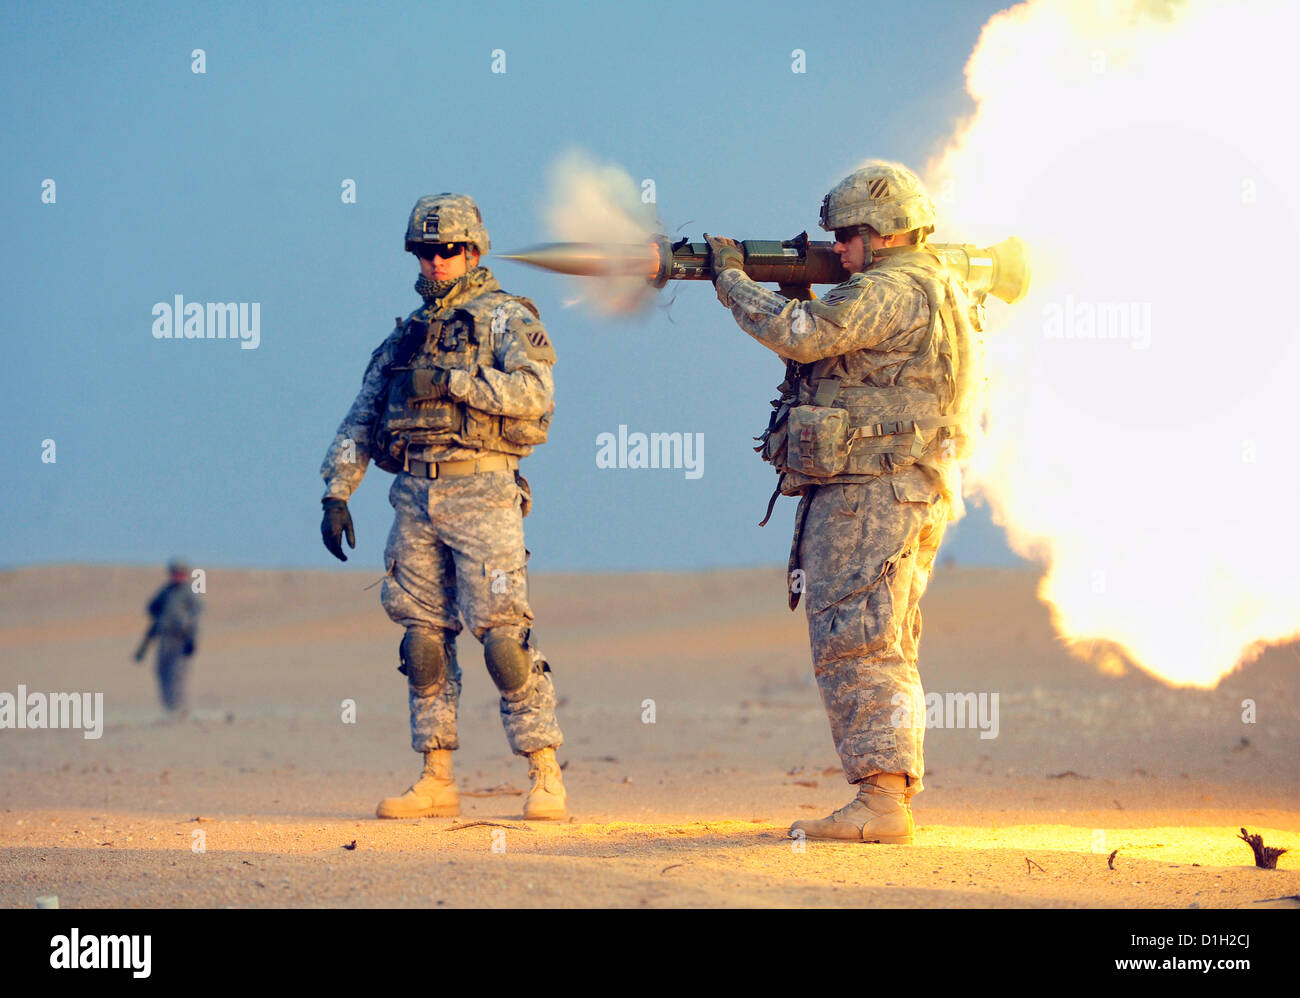 US Army Soldat feuert eine AT-4 Anti-Tank Waffe während des Trainings im Bereich Complex Udairi 20. Dezember 2012 in der Nähe von Camp Buehring, Kuwait. Die AT-4 ist eine tragbare, einschüssigen rückstoßfreie langläufige Waffe, schwer gepanzerte Fahrzeuge zu zerstören. Stockfoto